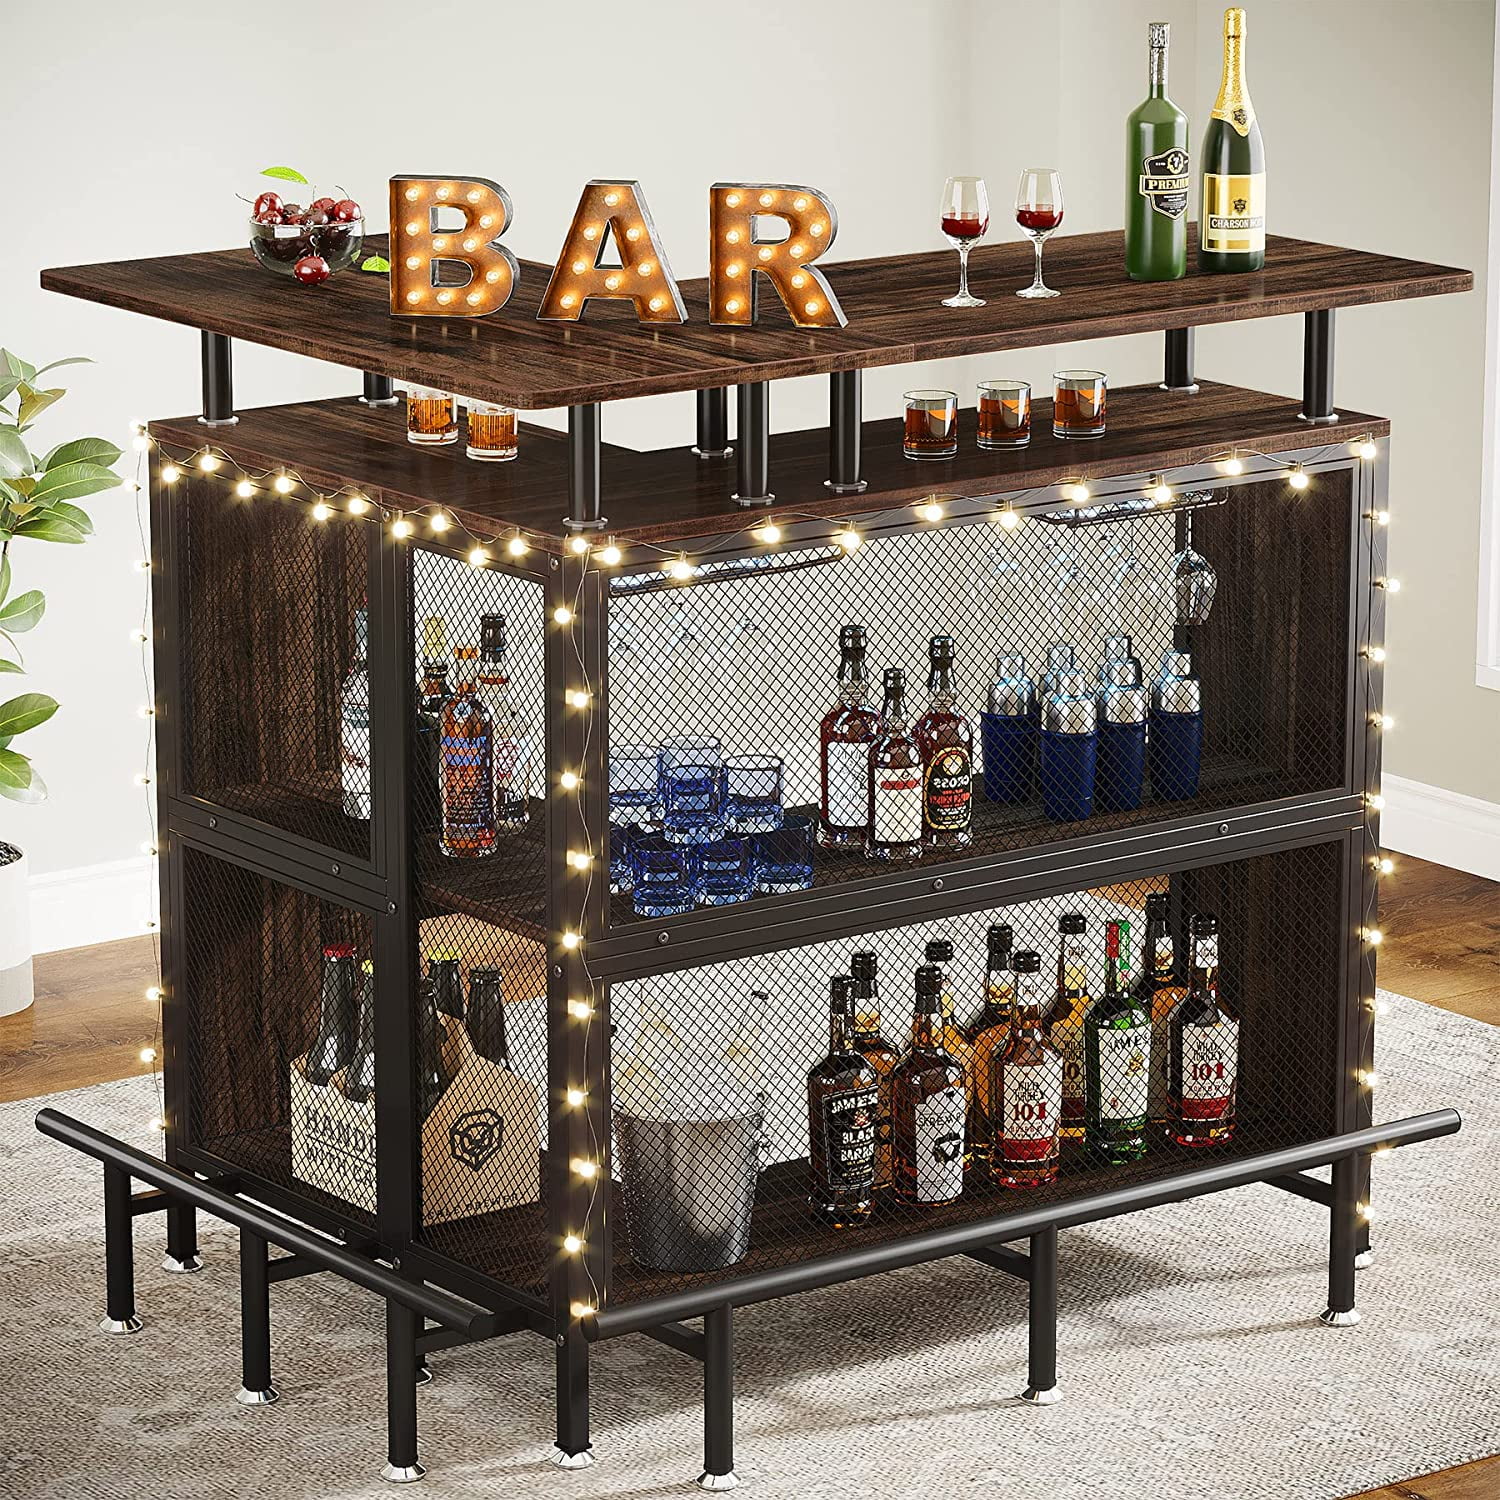 Home Liquor Bar